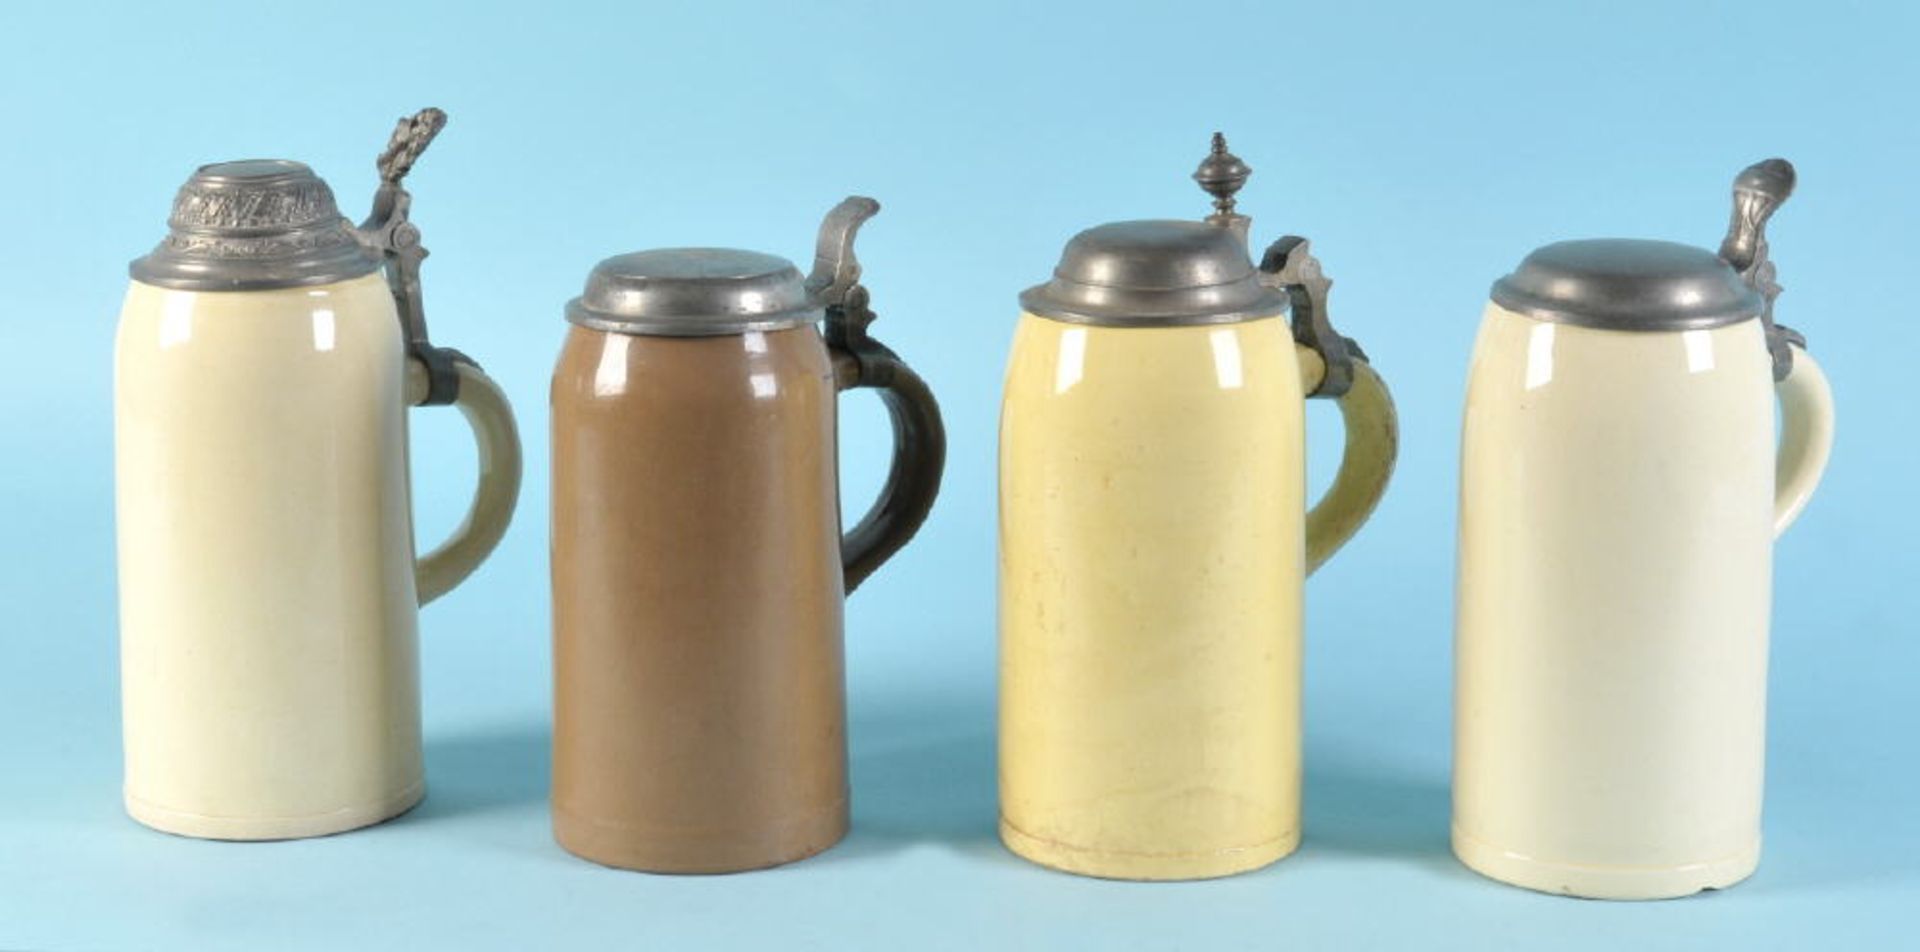 Bierkrüge mit Zinndeckeln, 4 StückSteinzeug, beige/braune Glasuren, H= 22-25 cm, 1 leicht best.